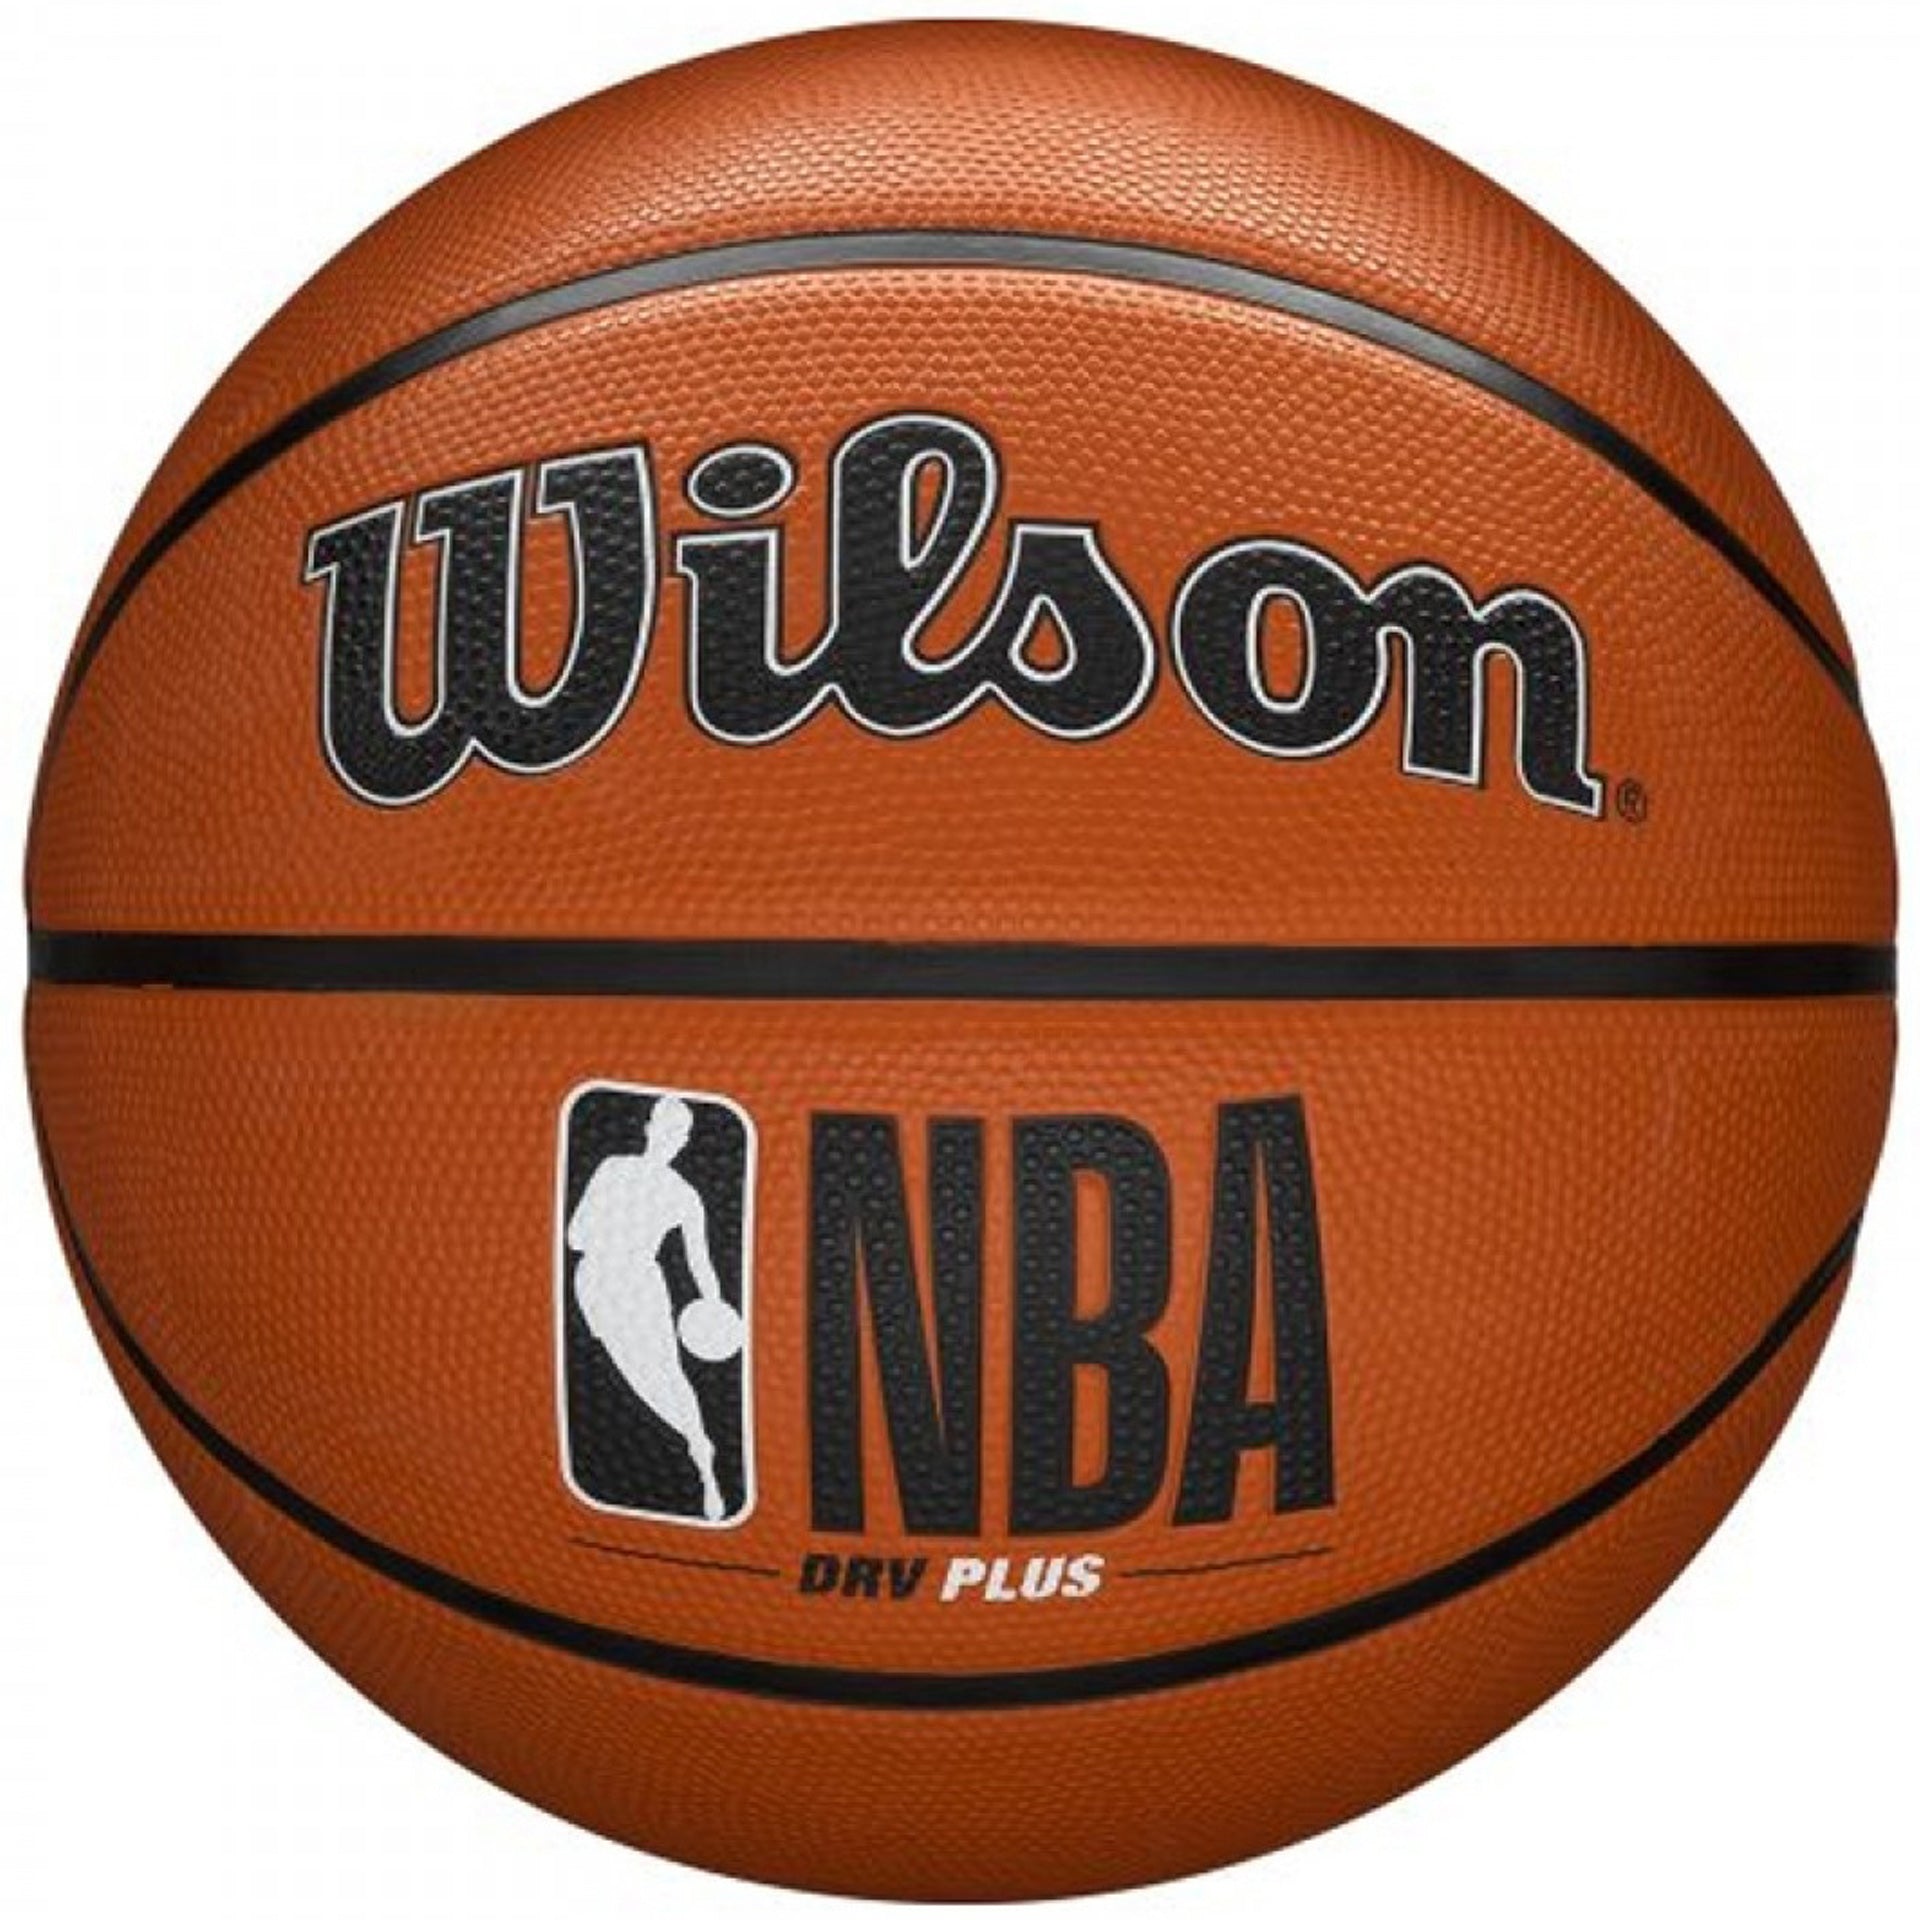 Balón Baloncesto Wilson Nba Drv Plus